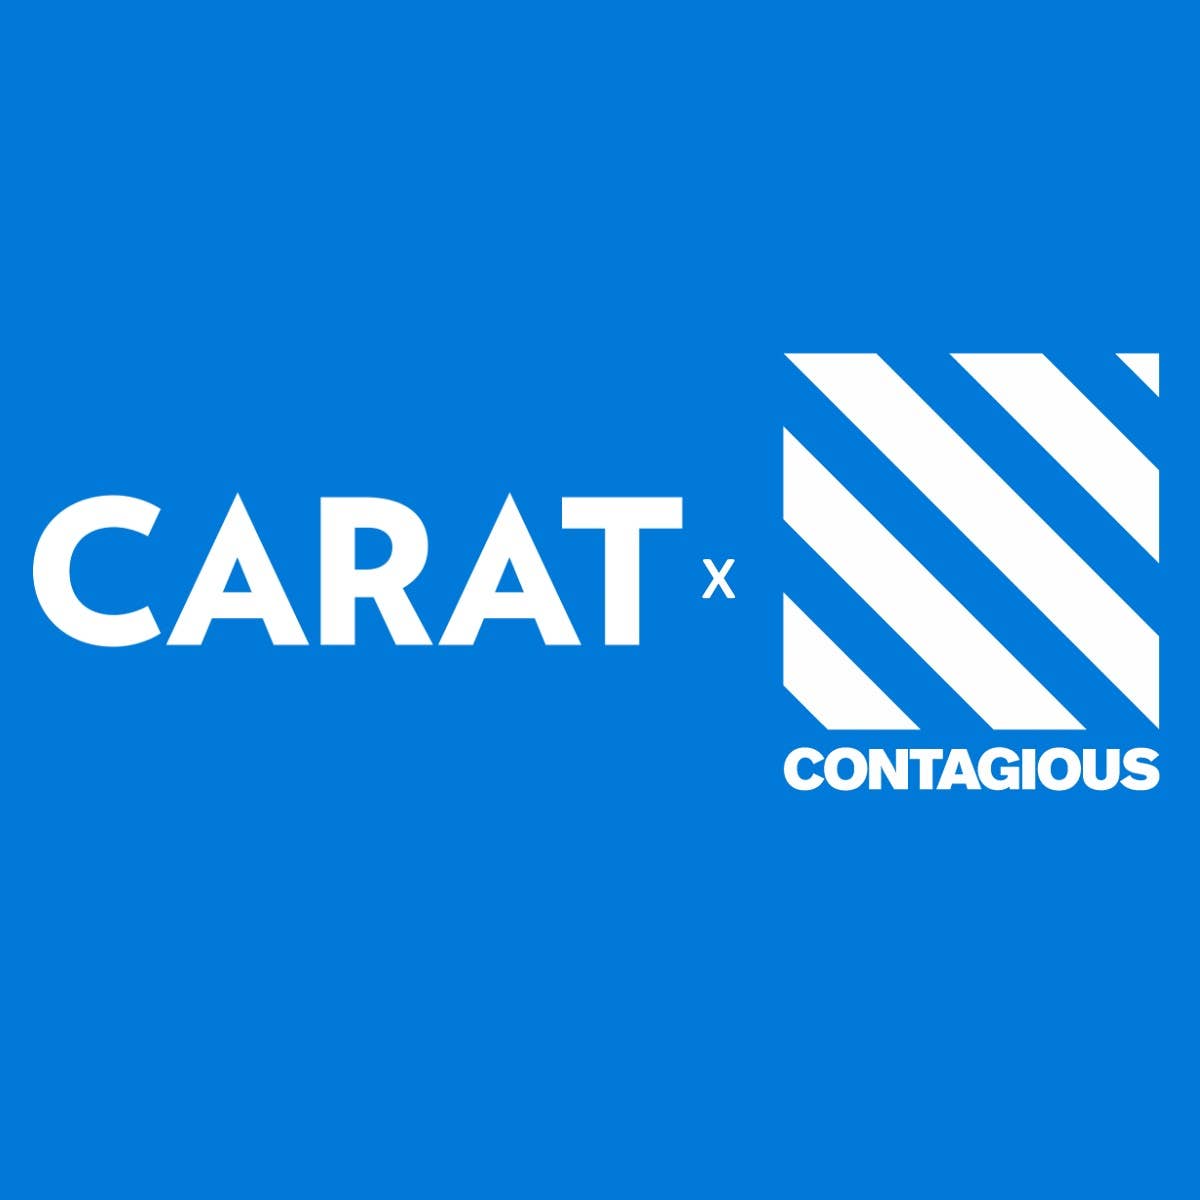 Carat x Contagious Partnership Announcement